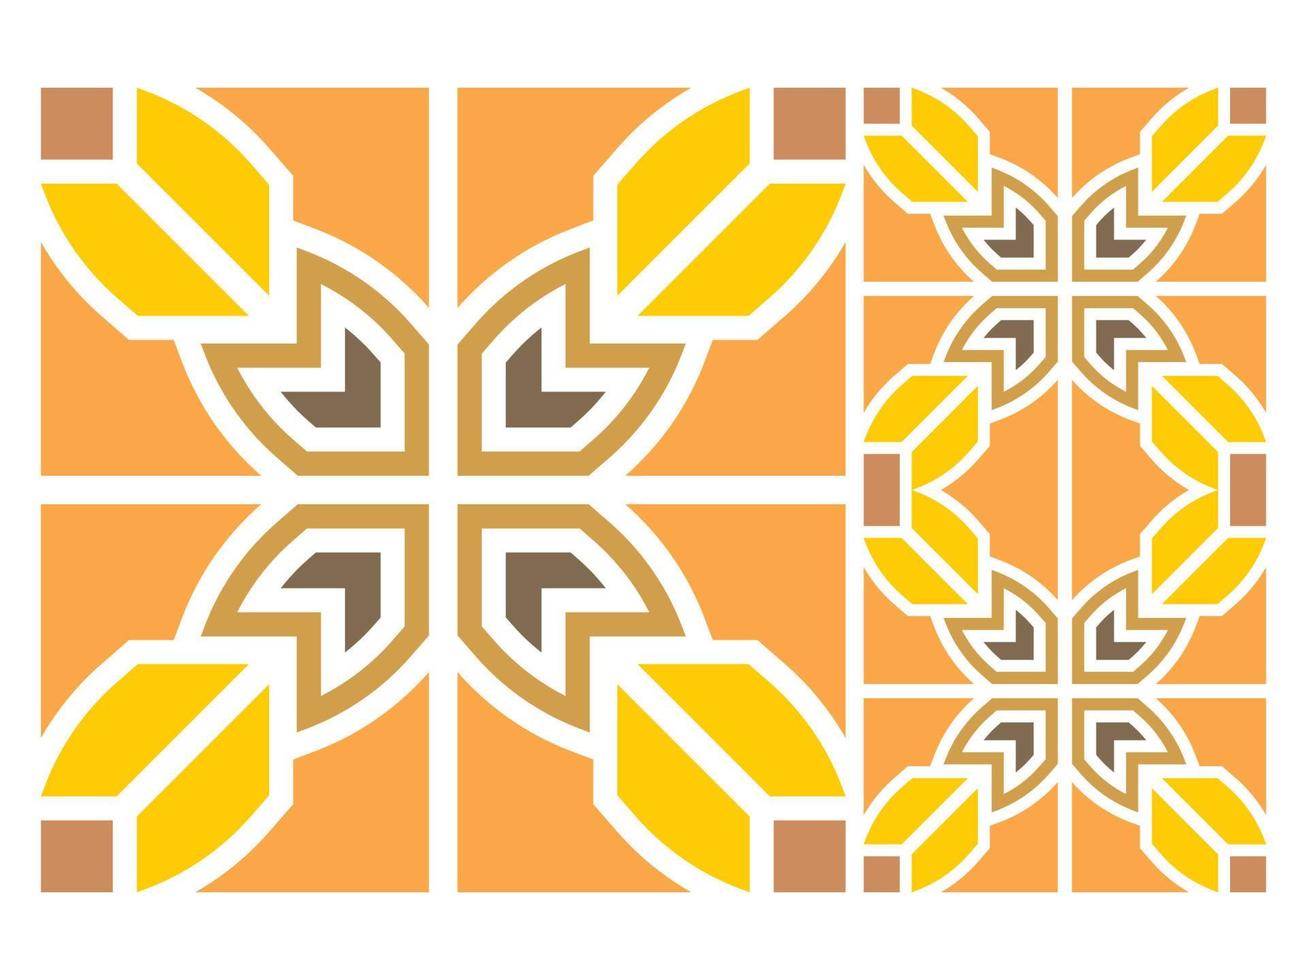 vector colorido de diseño de azulejo de patrones sin fisuras moderno gratis